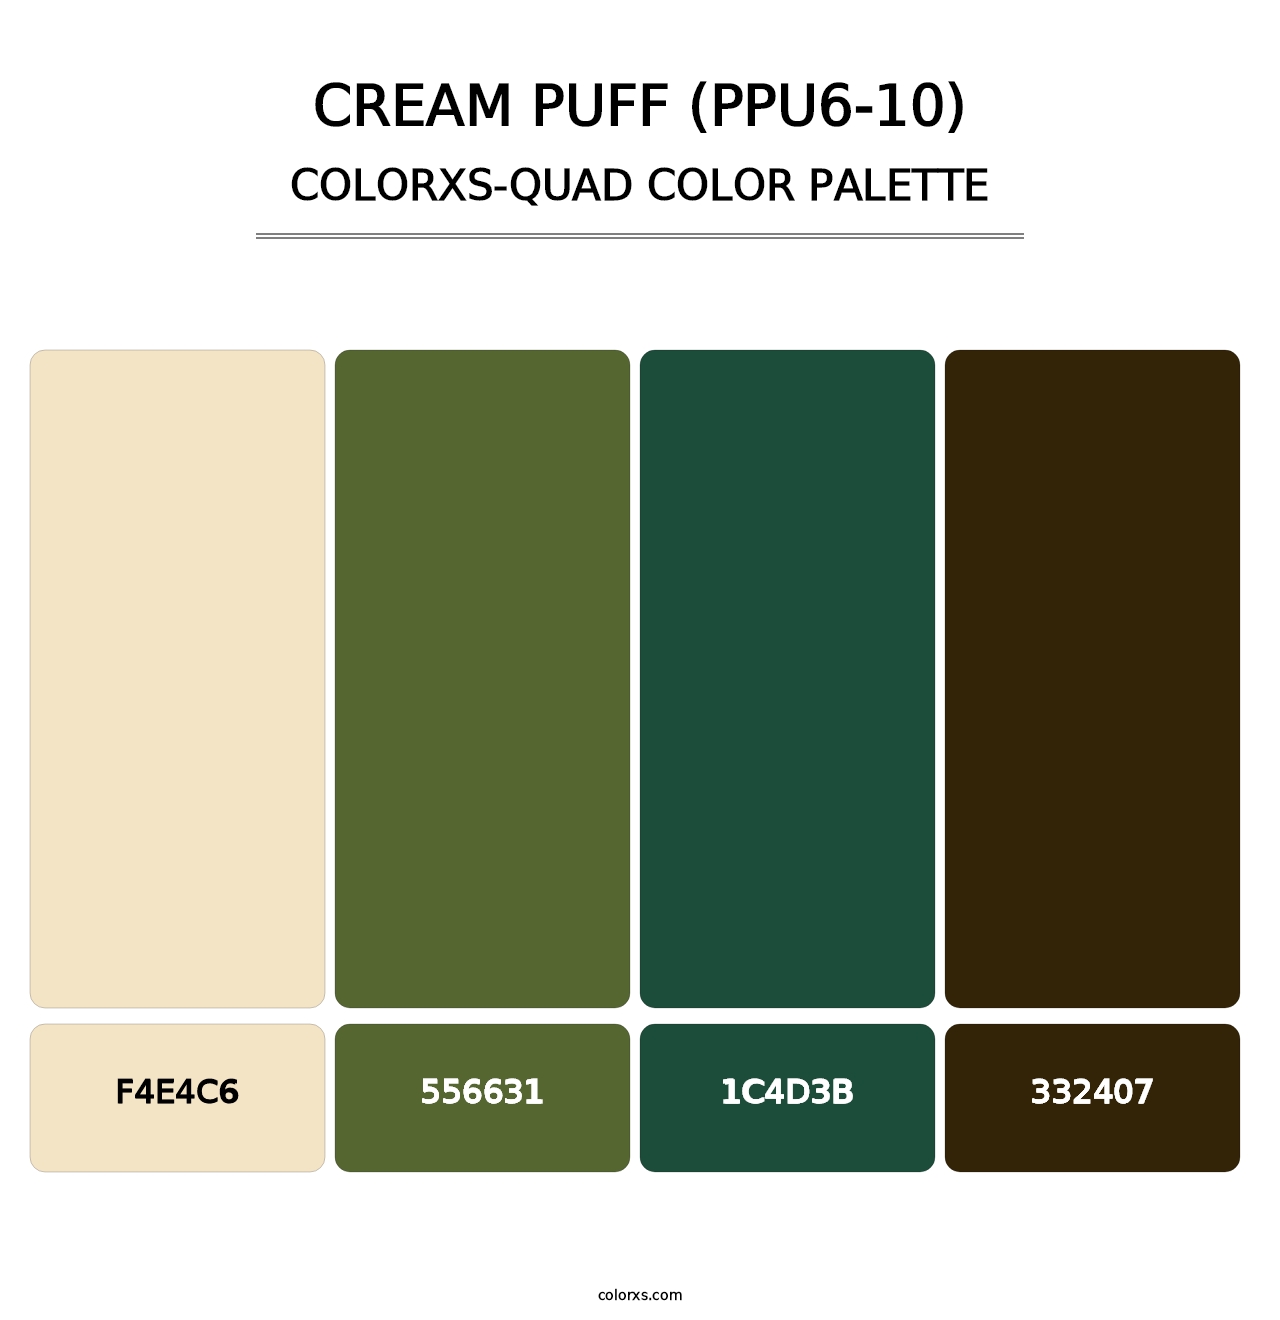 Cream Puff (PPU6-10) - Colorxs Quad Palette